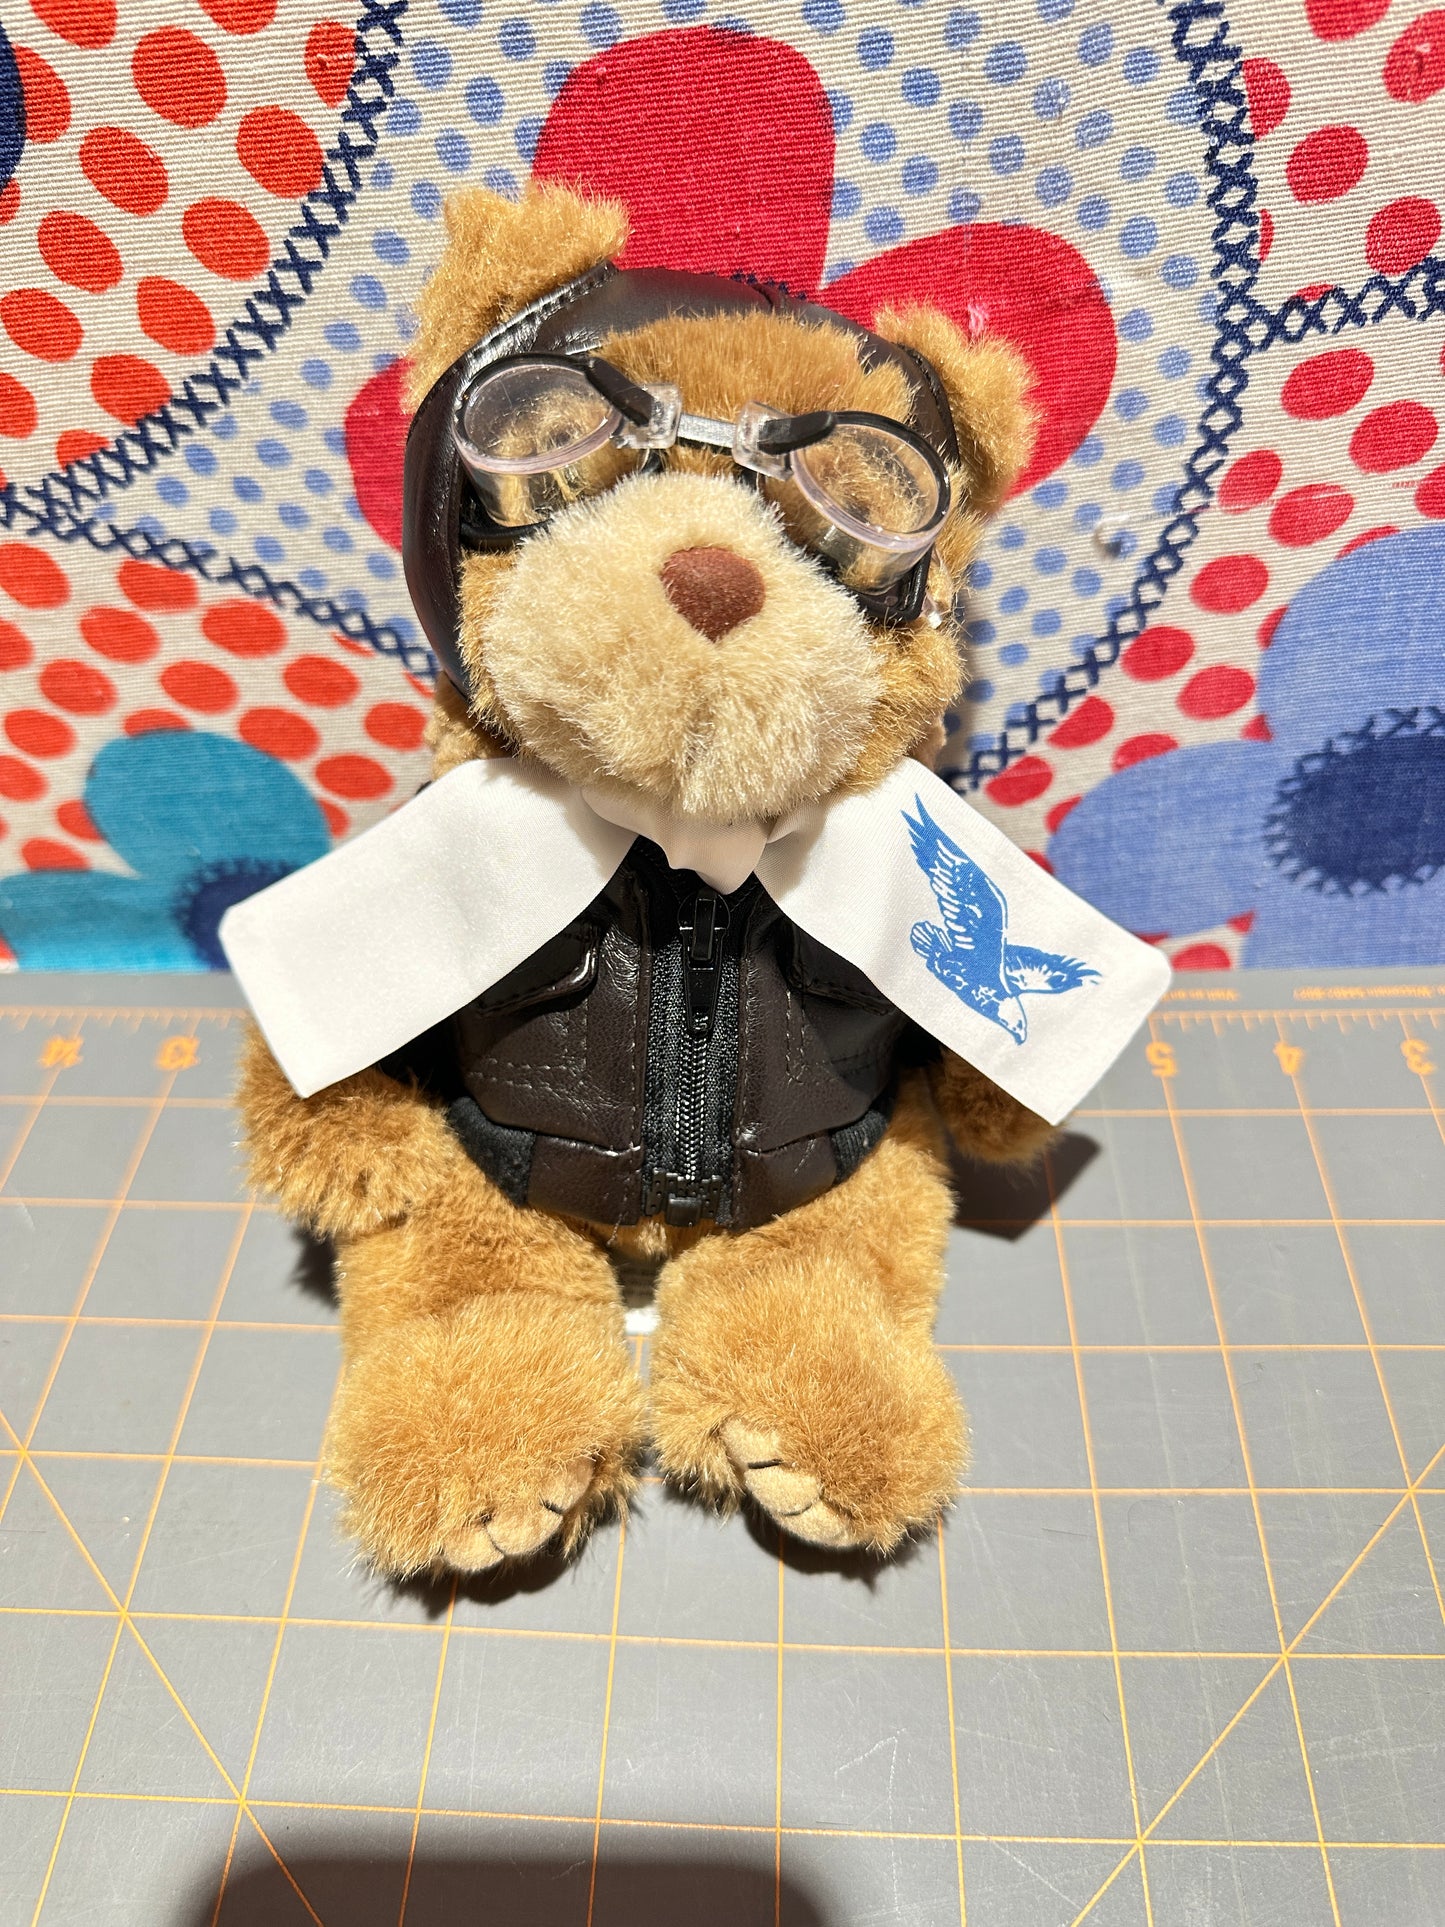 Aviator Teddy Bear by Artistic Toy Mfg, 8"